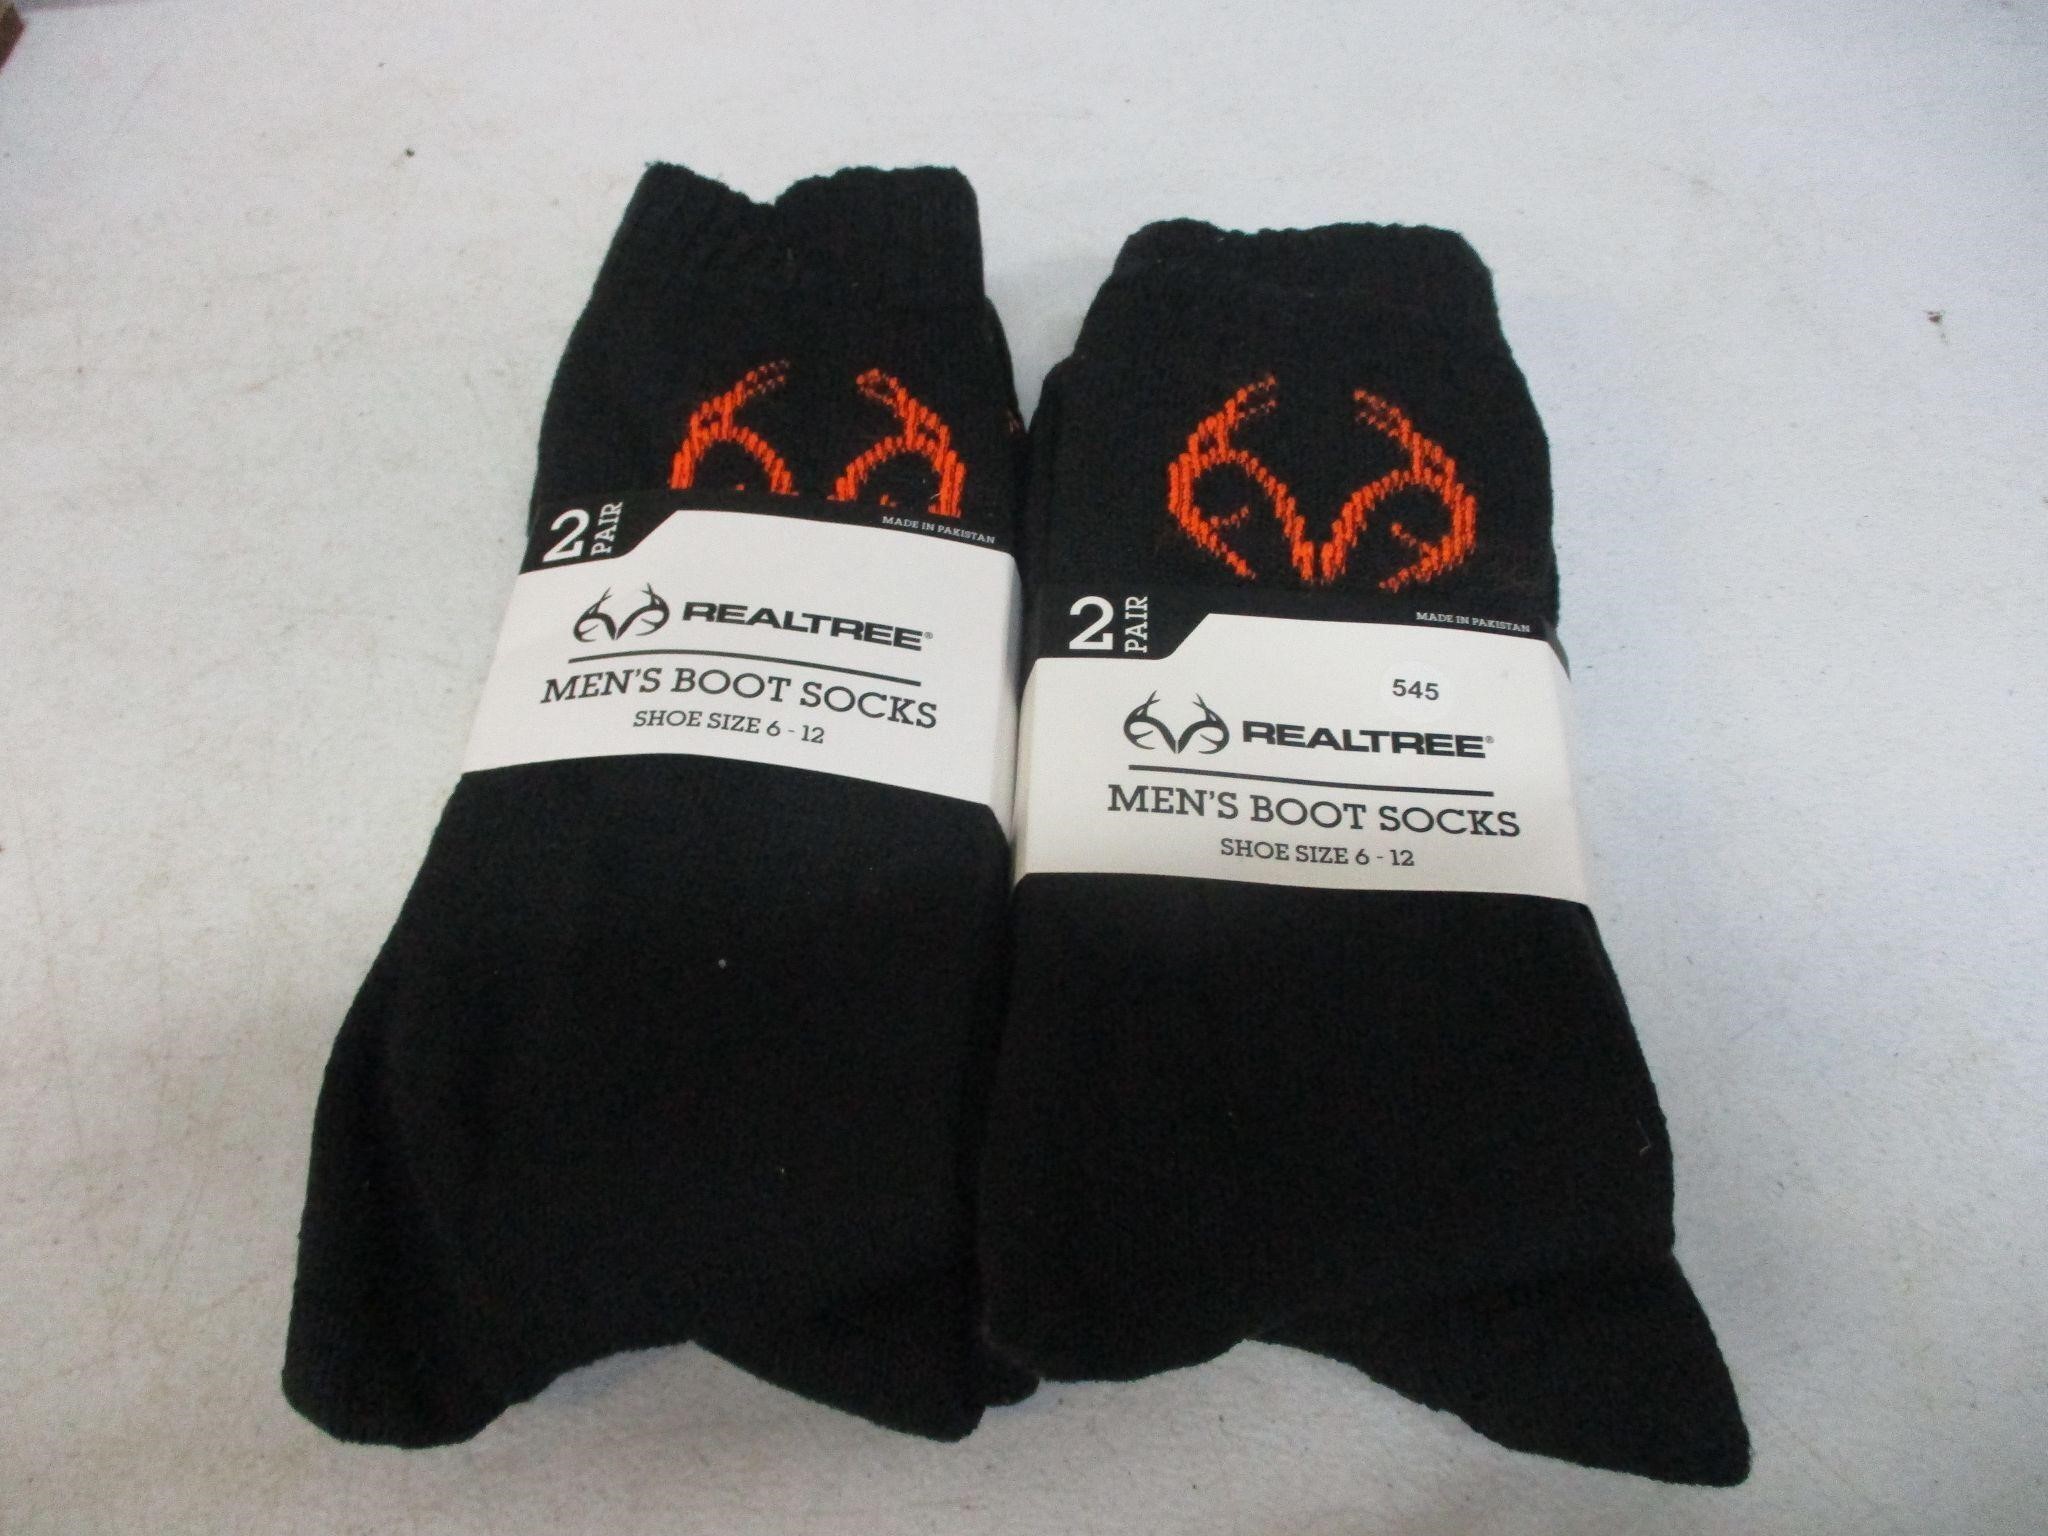 2 New Packs of Realtree Men's Boot Socks sz 6-12